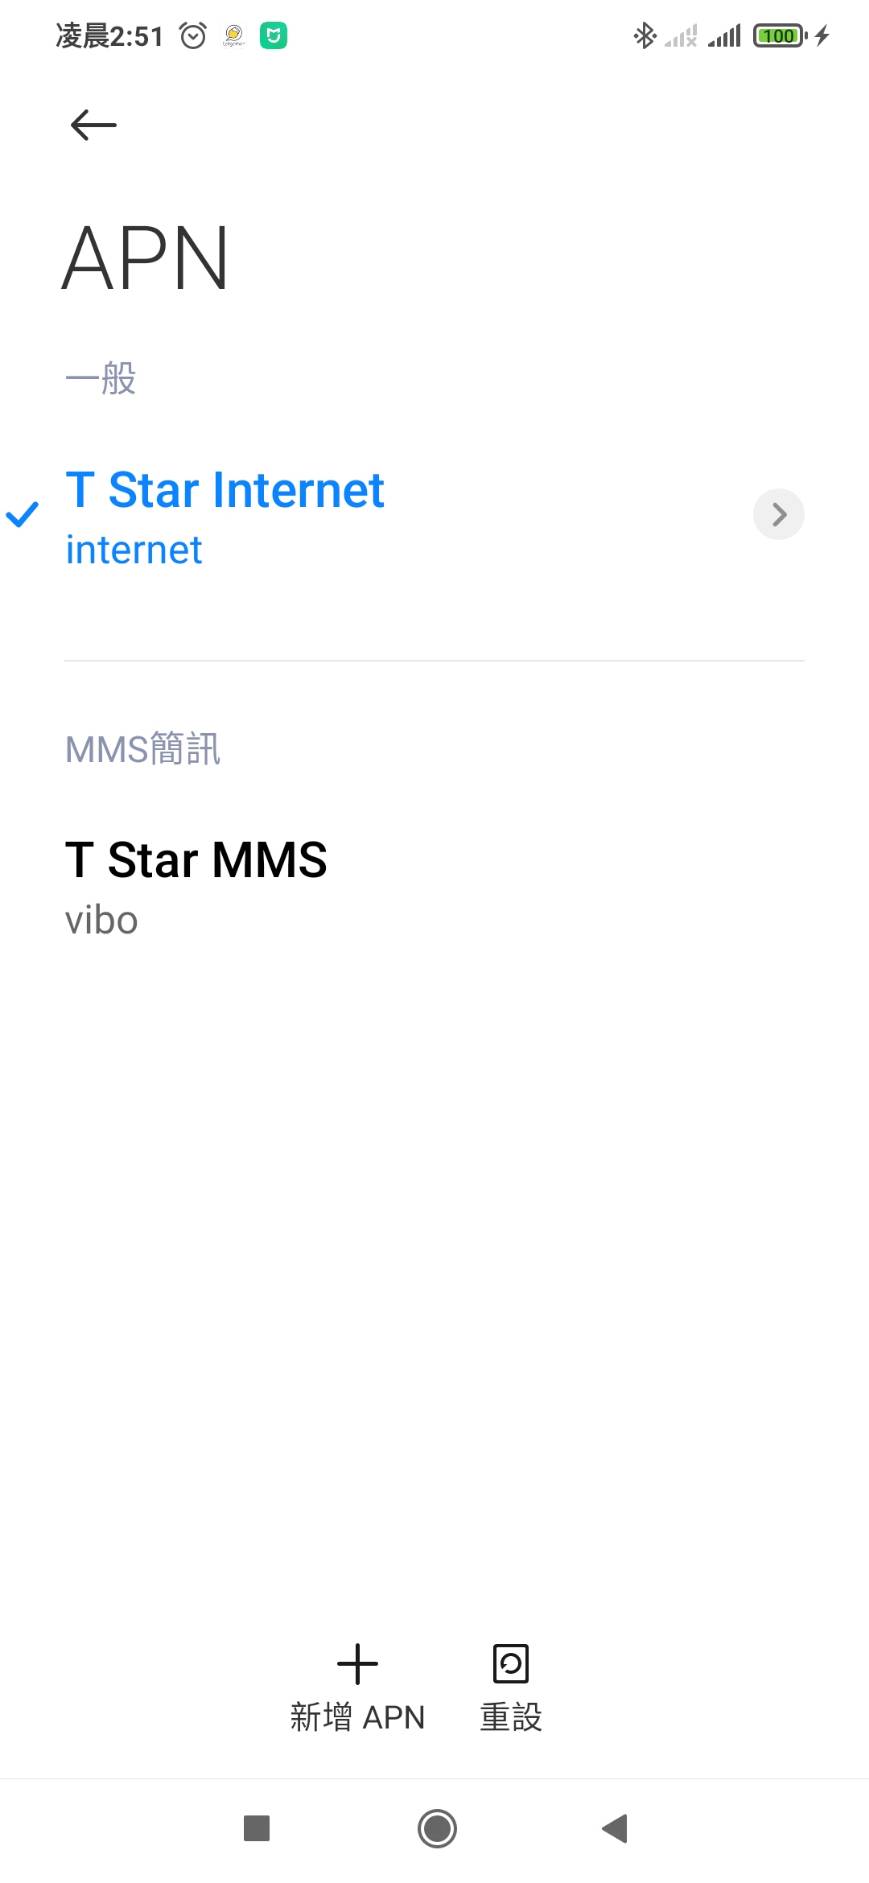 台灣之星mms簡訊無法下載的解決教學。 - 台灣之星, mms, 台灣之星mms訊息, mms簡訊無法下載 - 敗家達人推薦